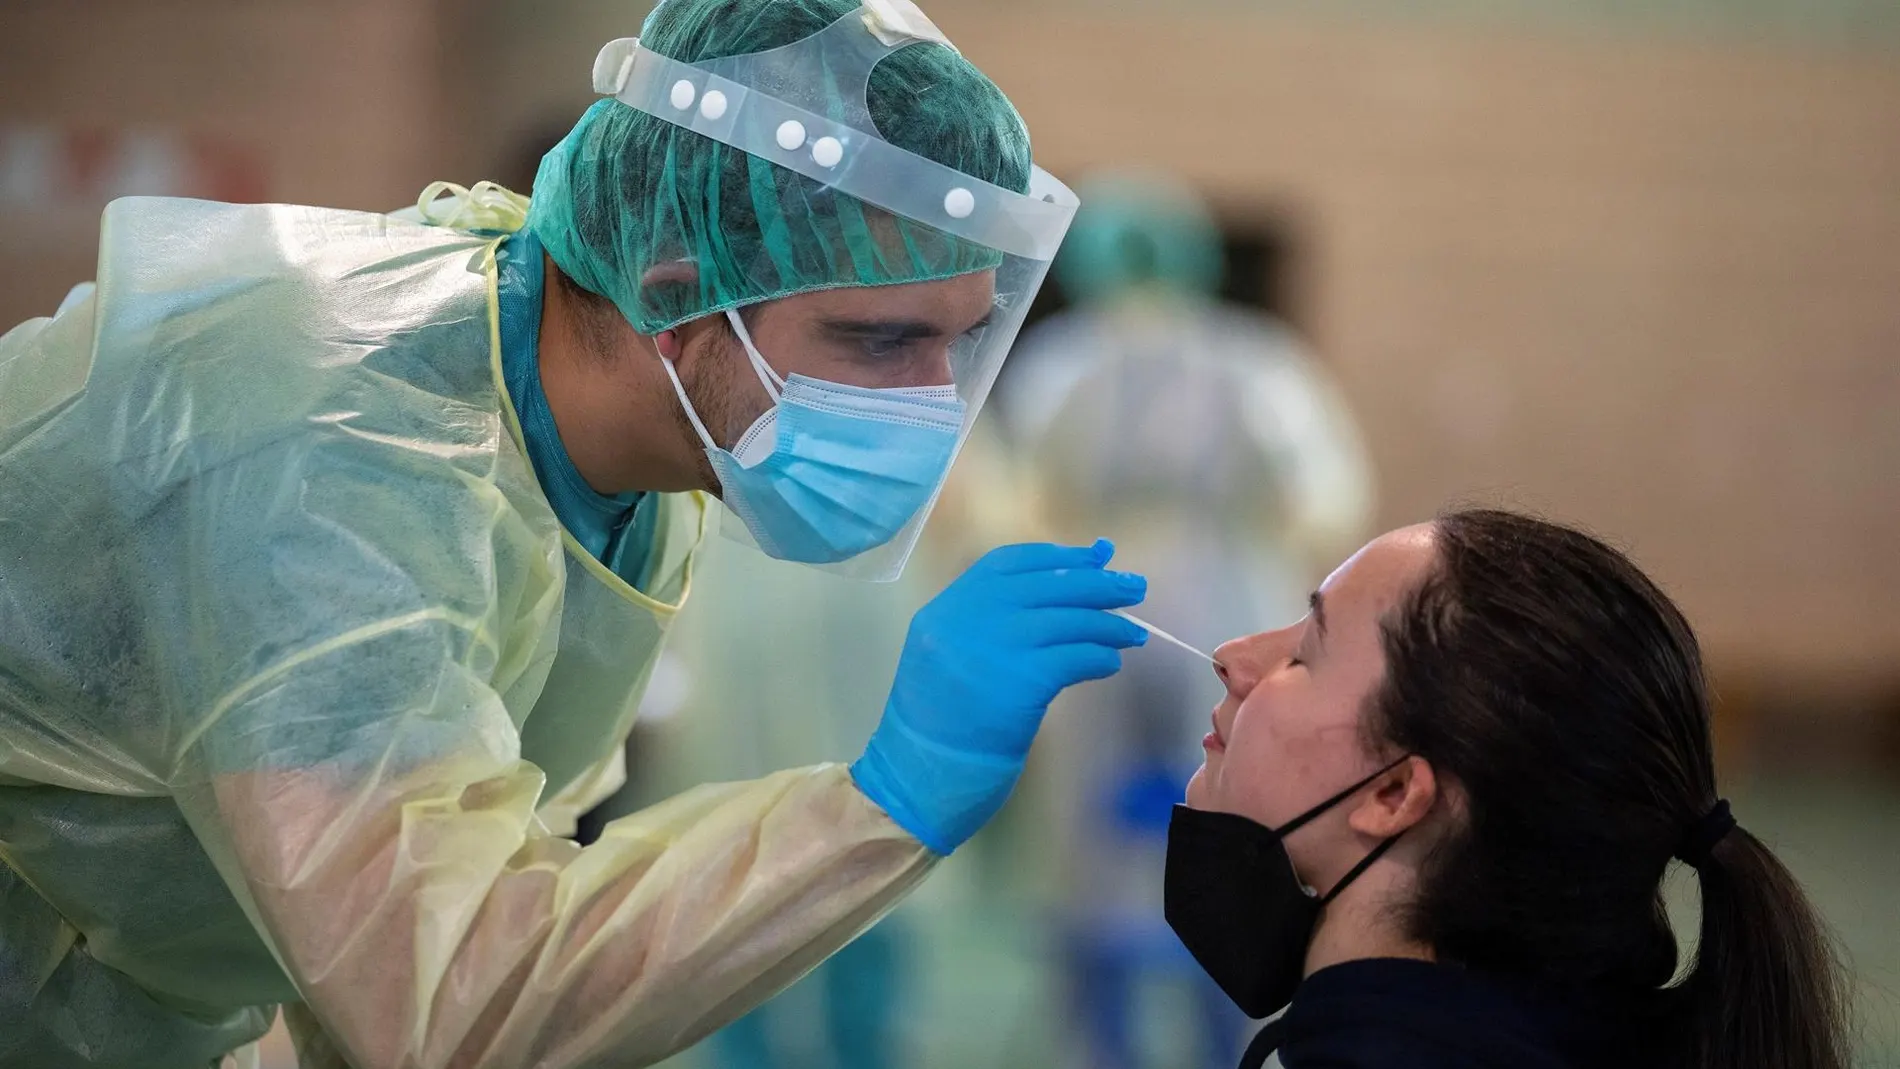 País Vasco alcanza su máximo de casos de coronavirus en un día en toda la pandemia con 1.583 positivos